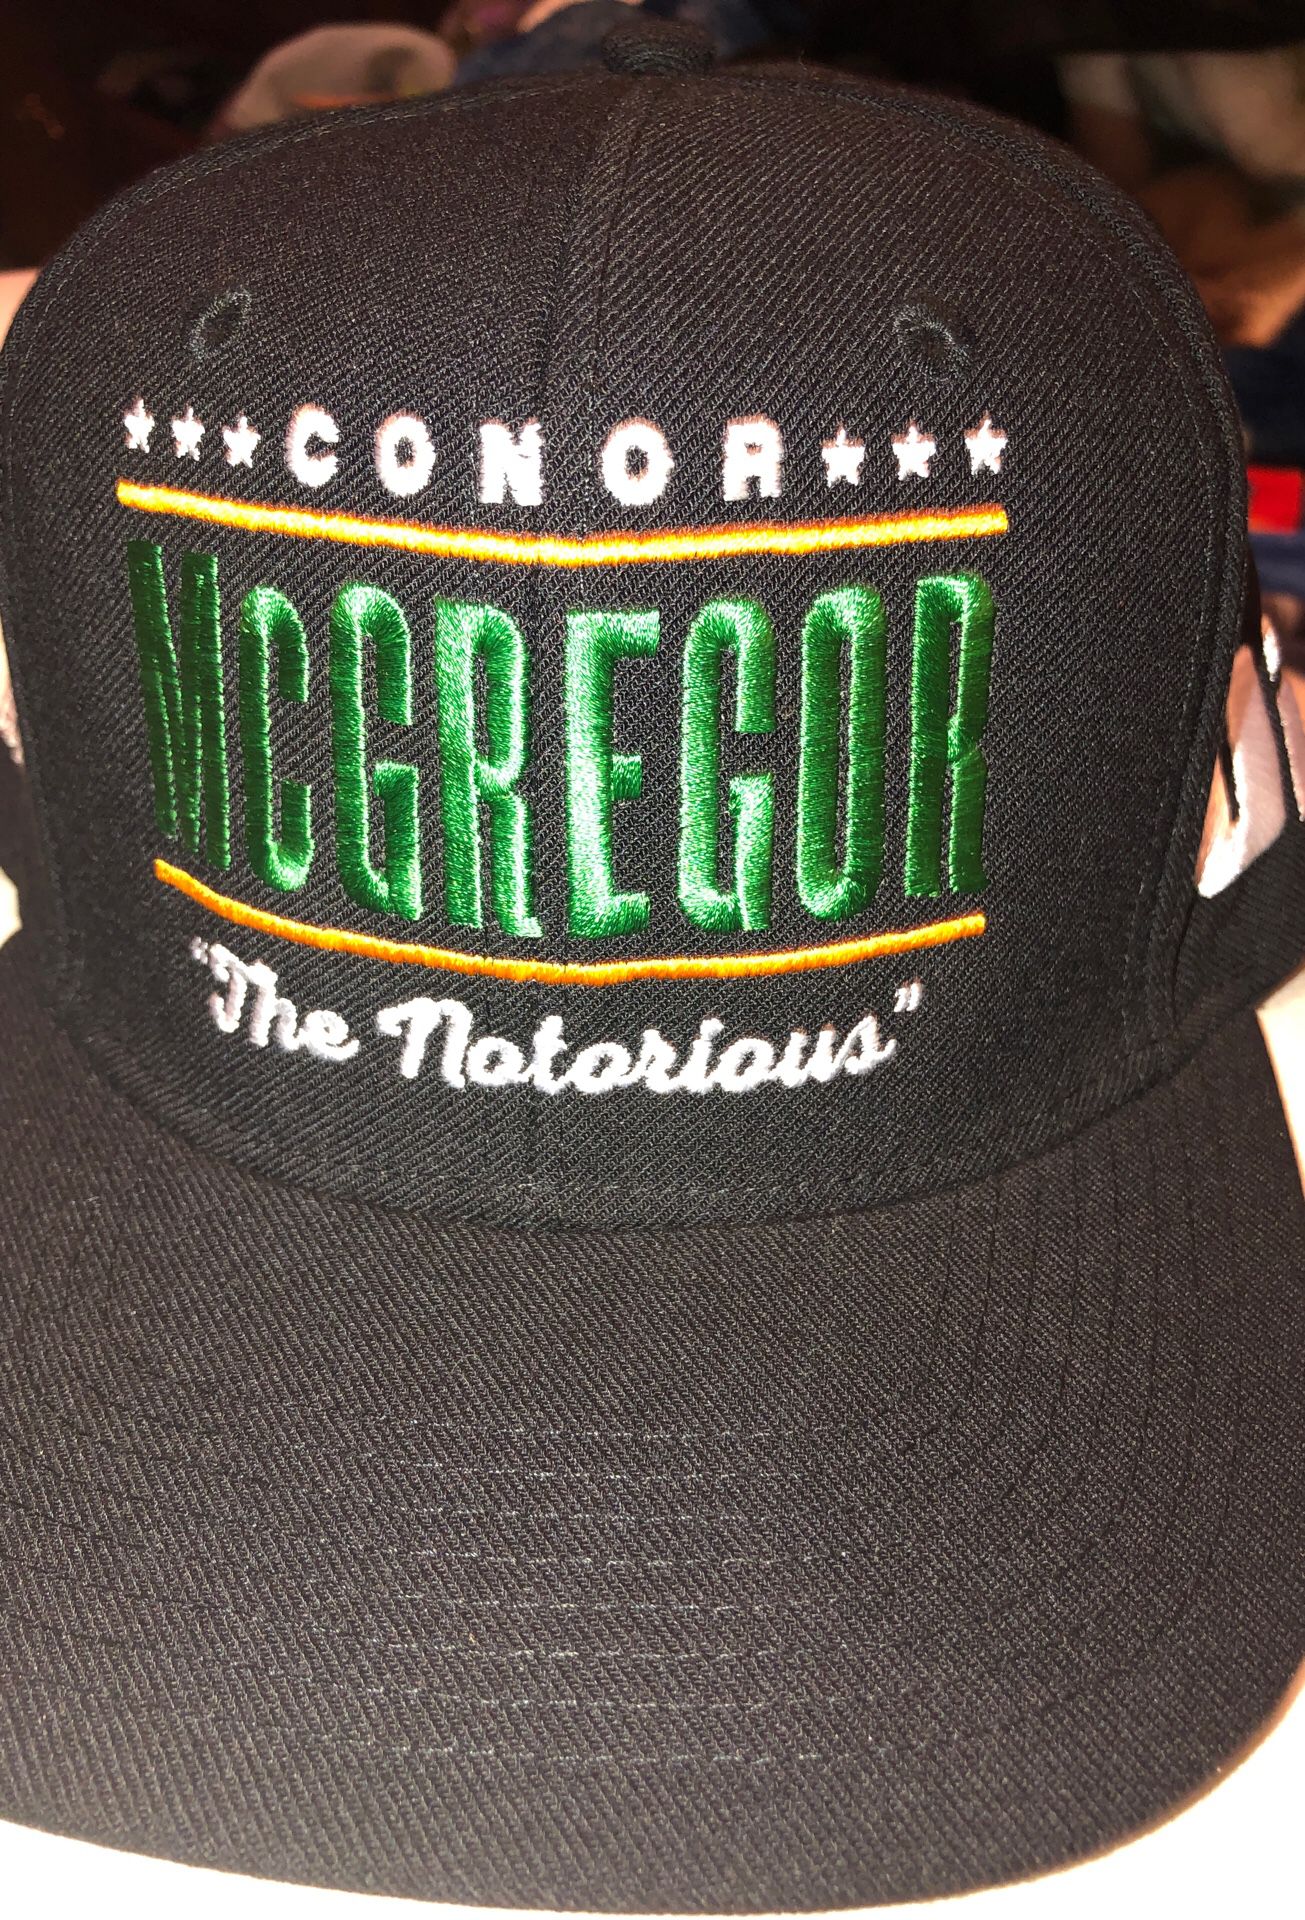 Reebok Conor McGregor UFC SnapBack Hat $25